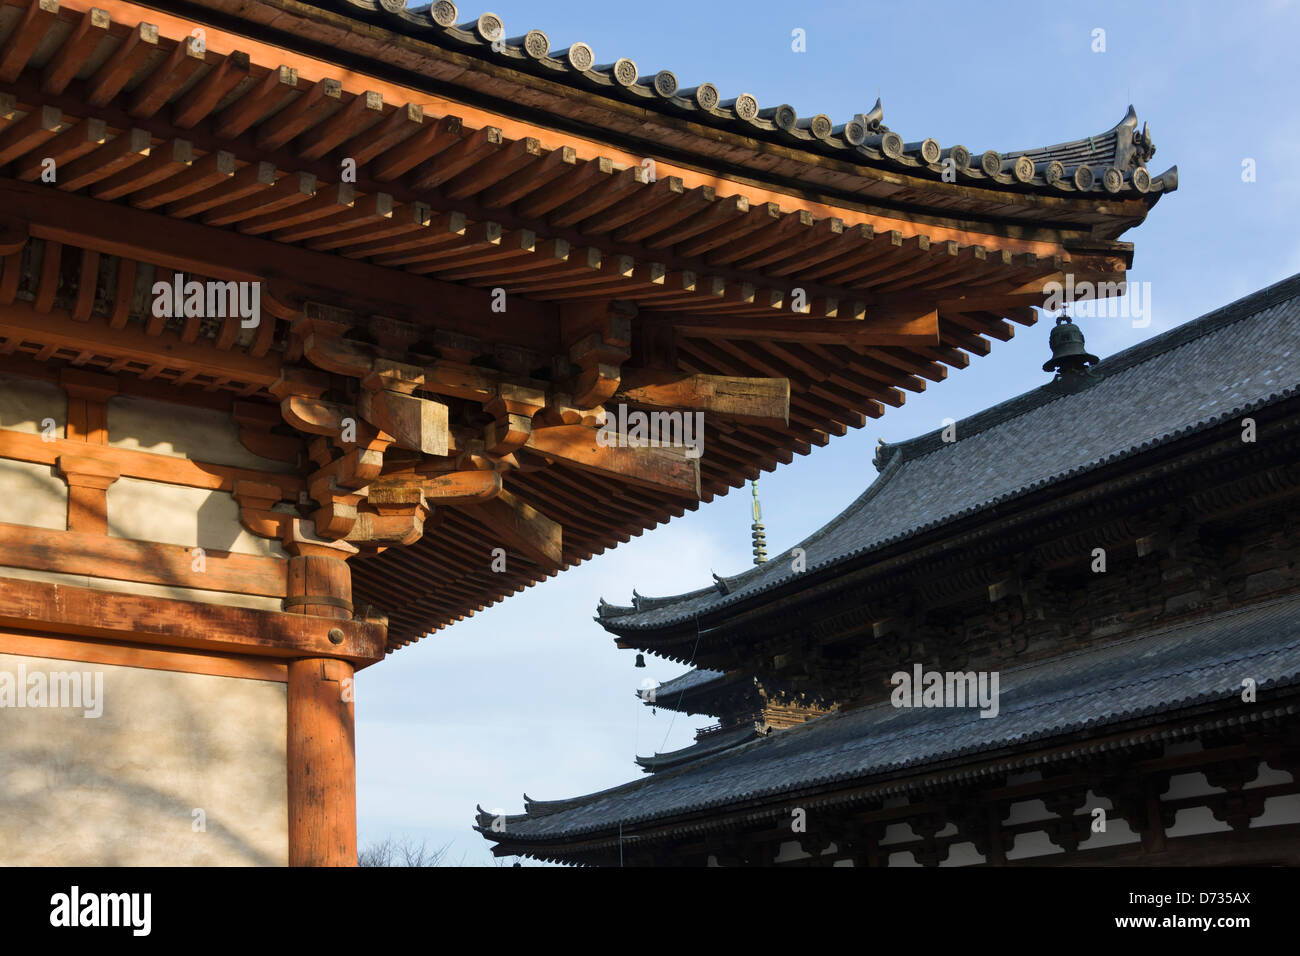 Toji Temple, Kyoto, Japan Stock Photo